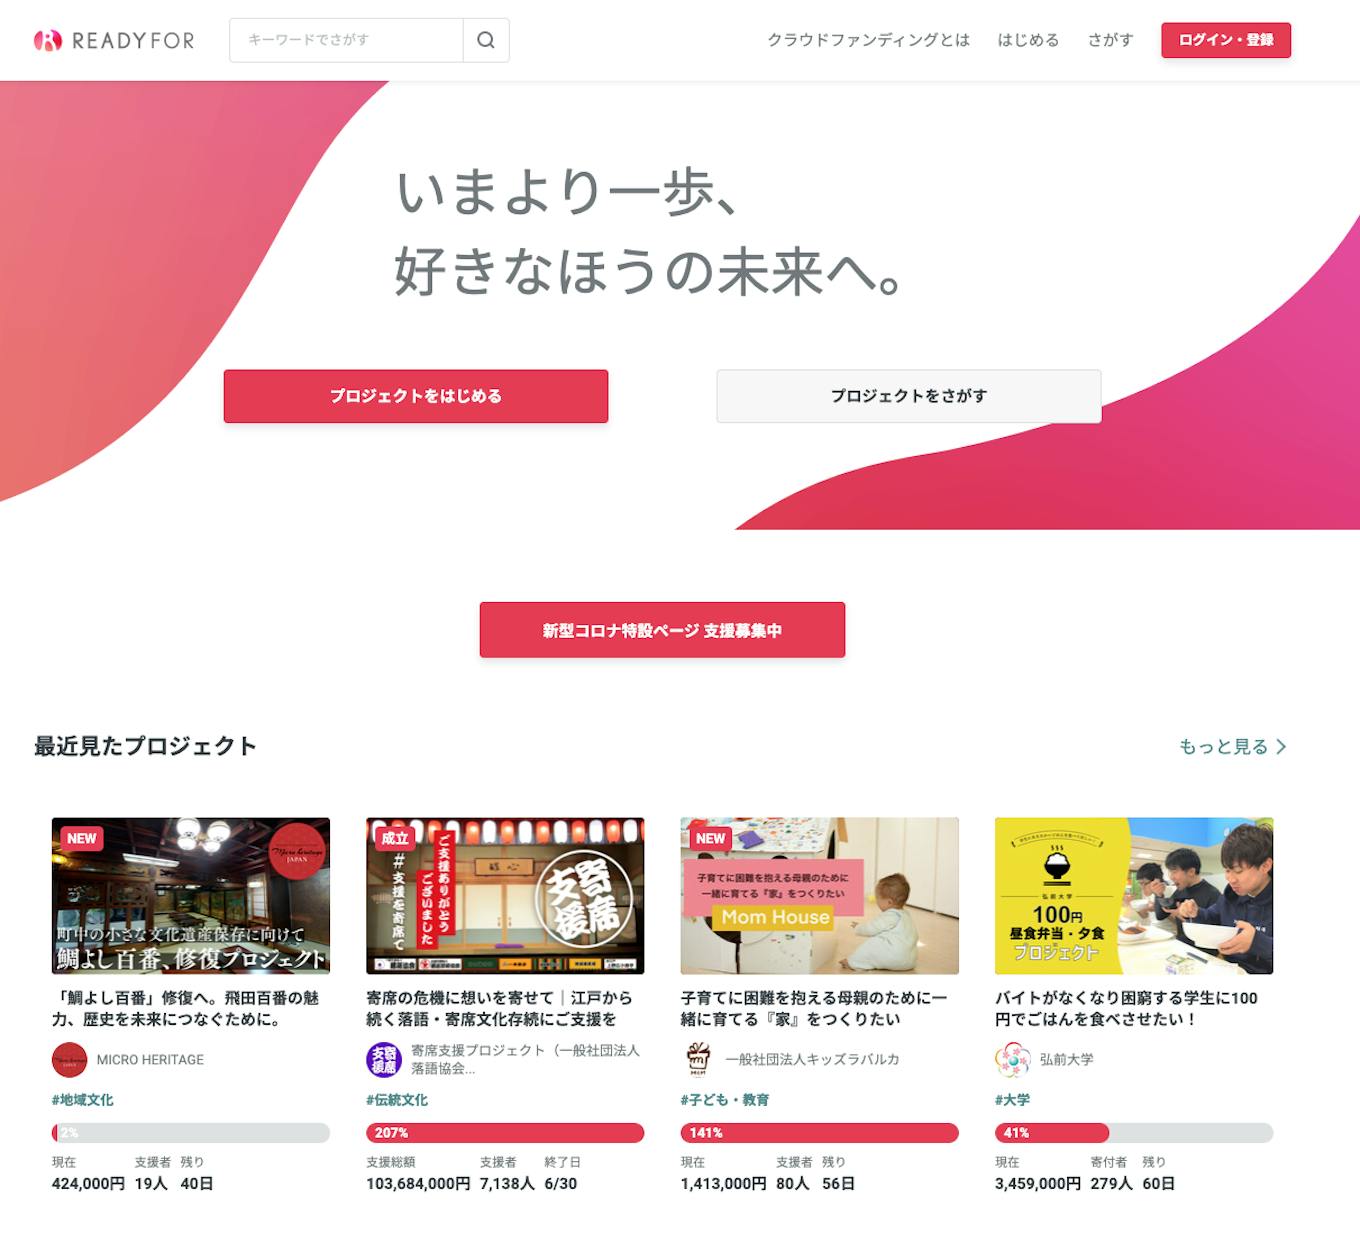 日本初・国内最大級のクラウドファンディングサービス「READYFOR」を展開。